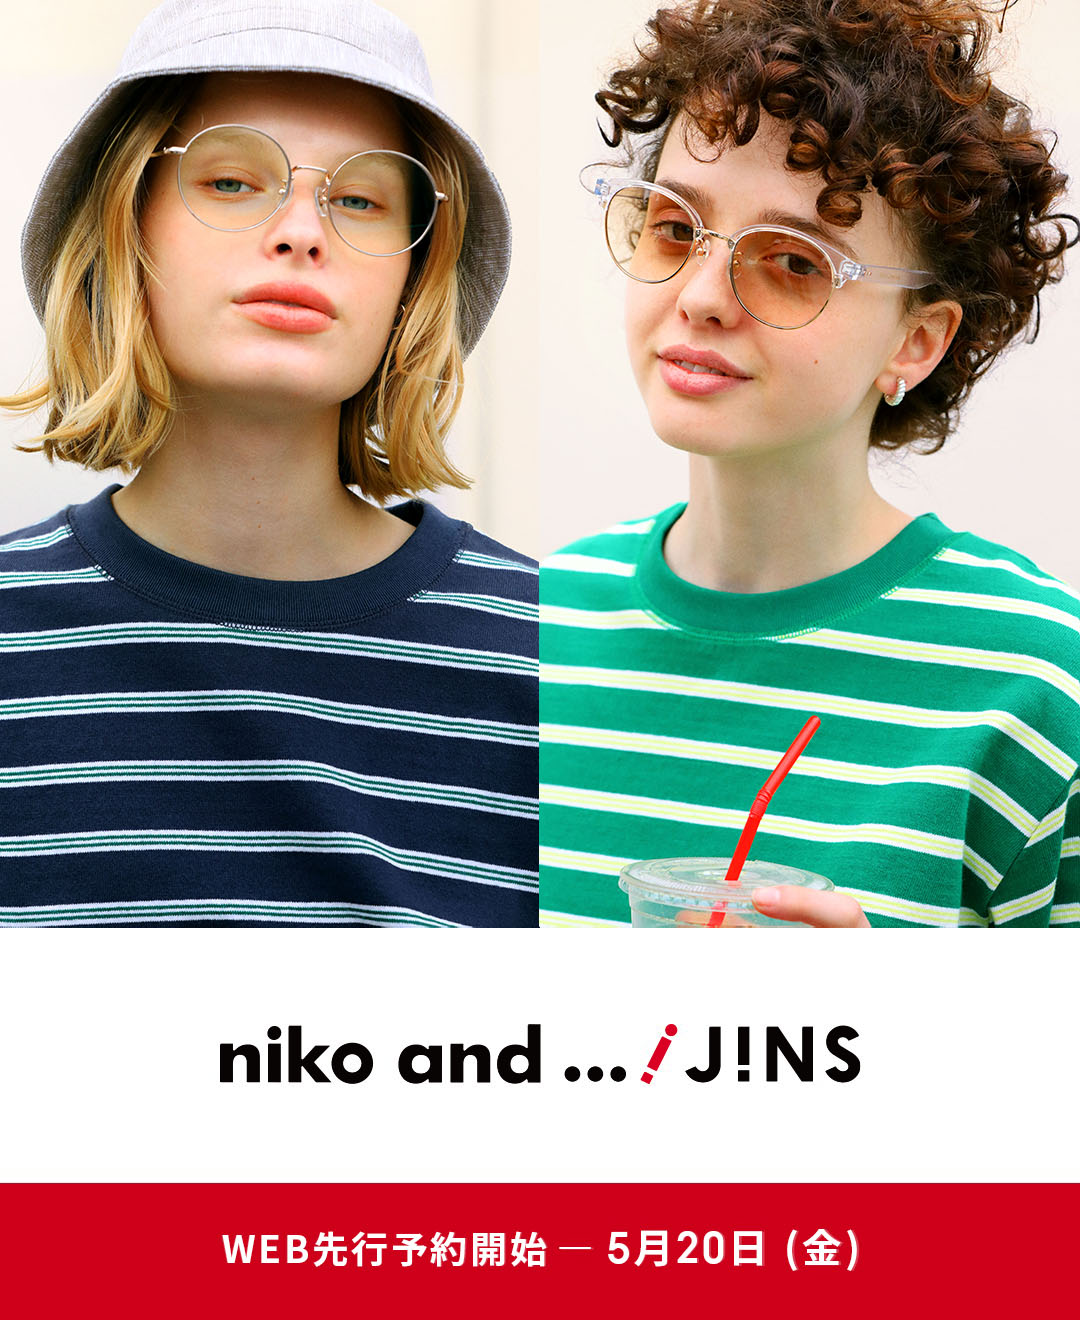 メガネ(めがね・眼鏡）のJINS『niko and ...×JINS』